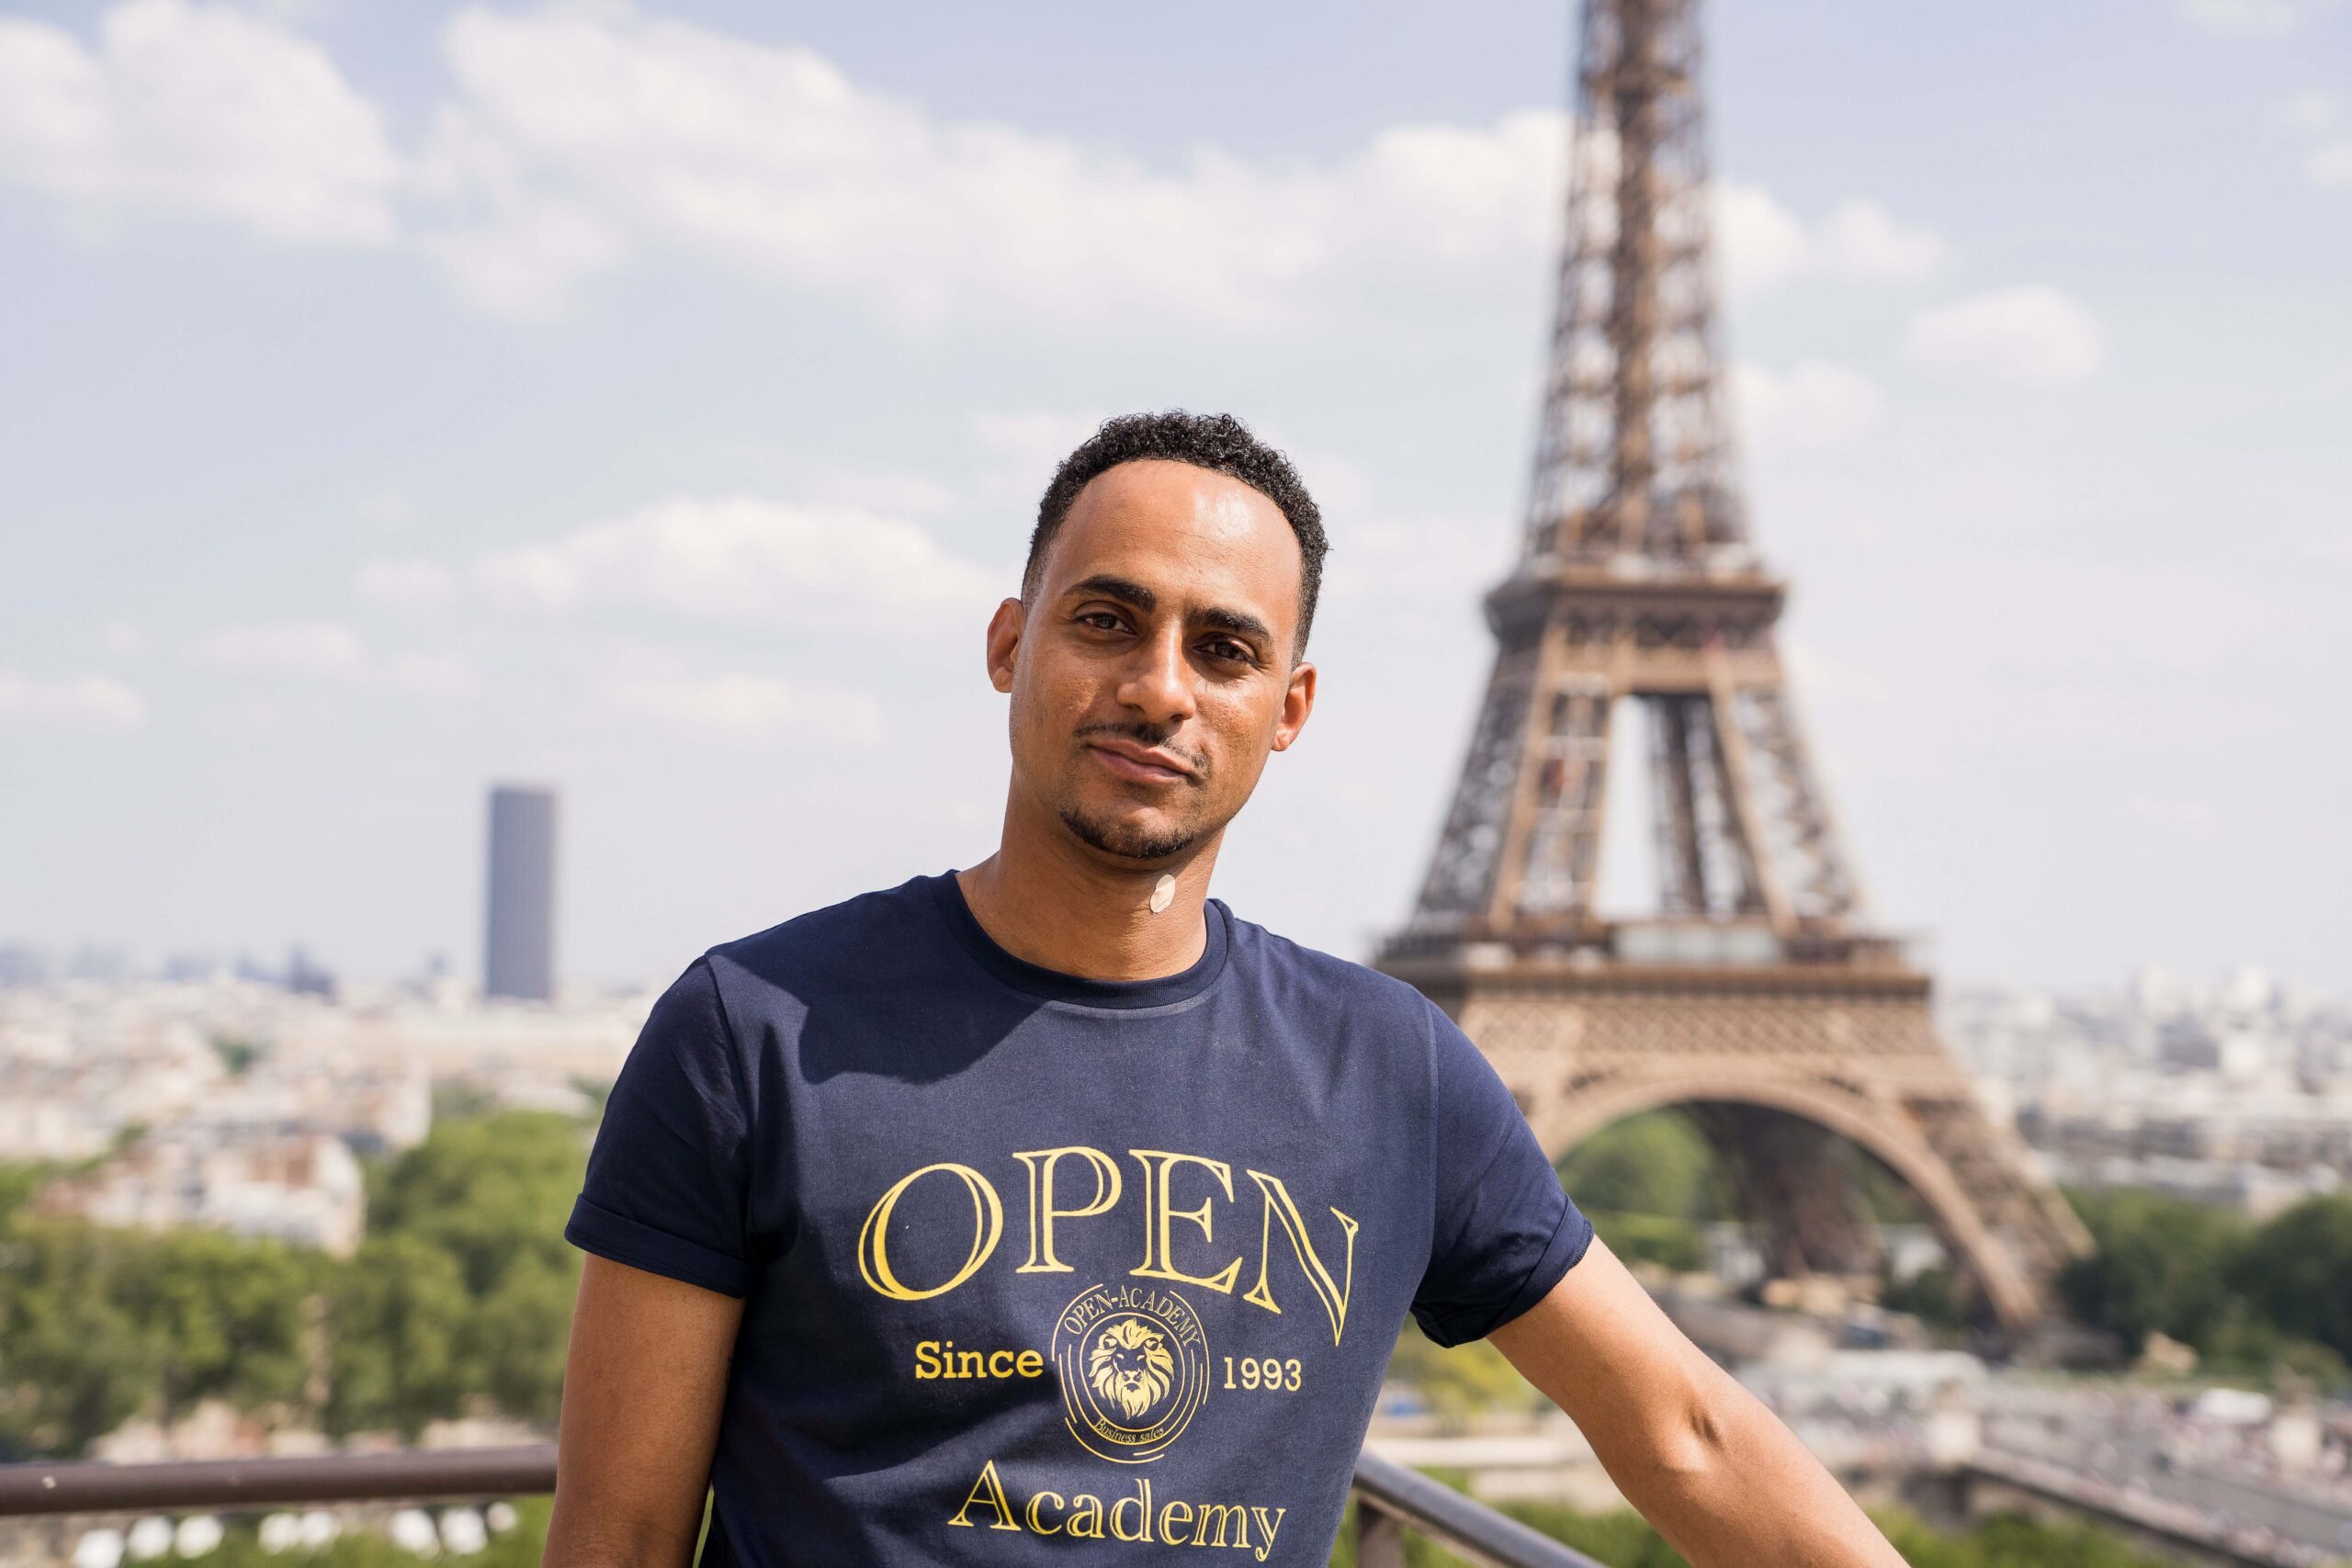 Homme en tee shirt bleu devant la tour Eiffel